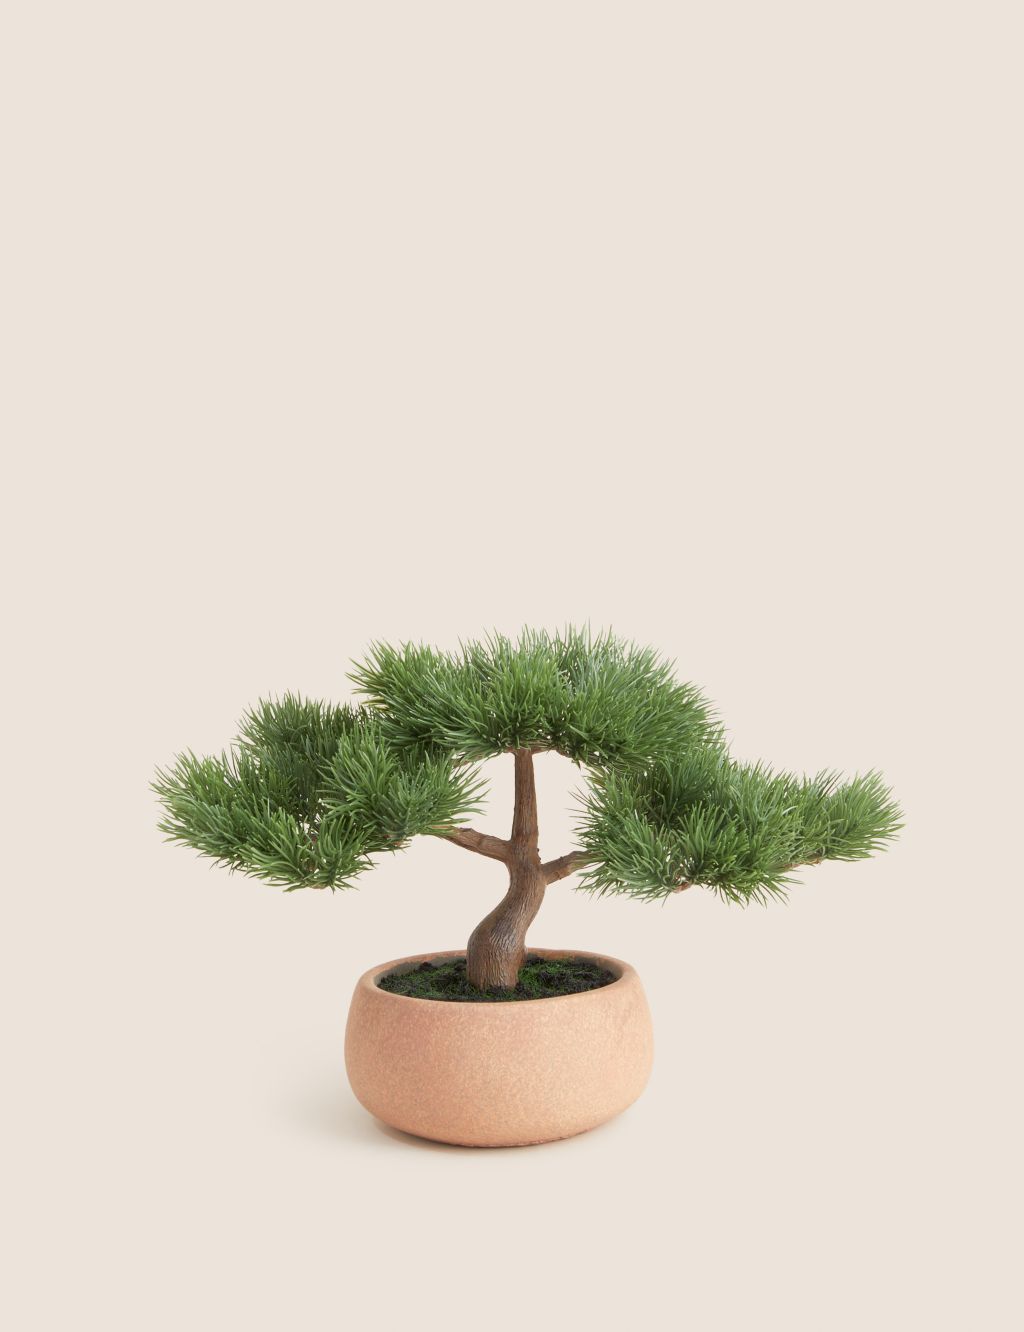 Artificial Bonsai Tree in Concrete Pot image 1